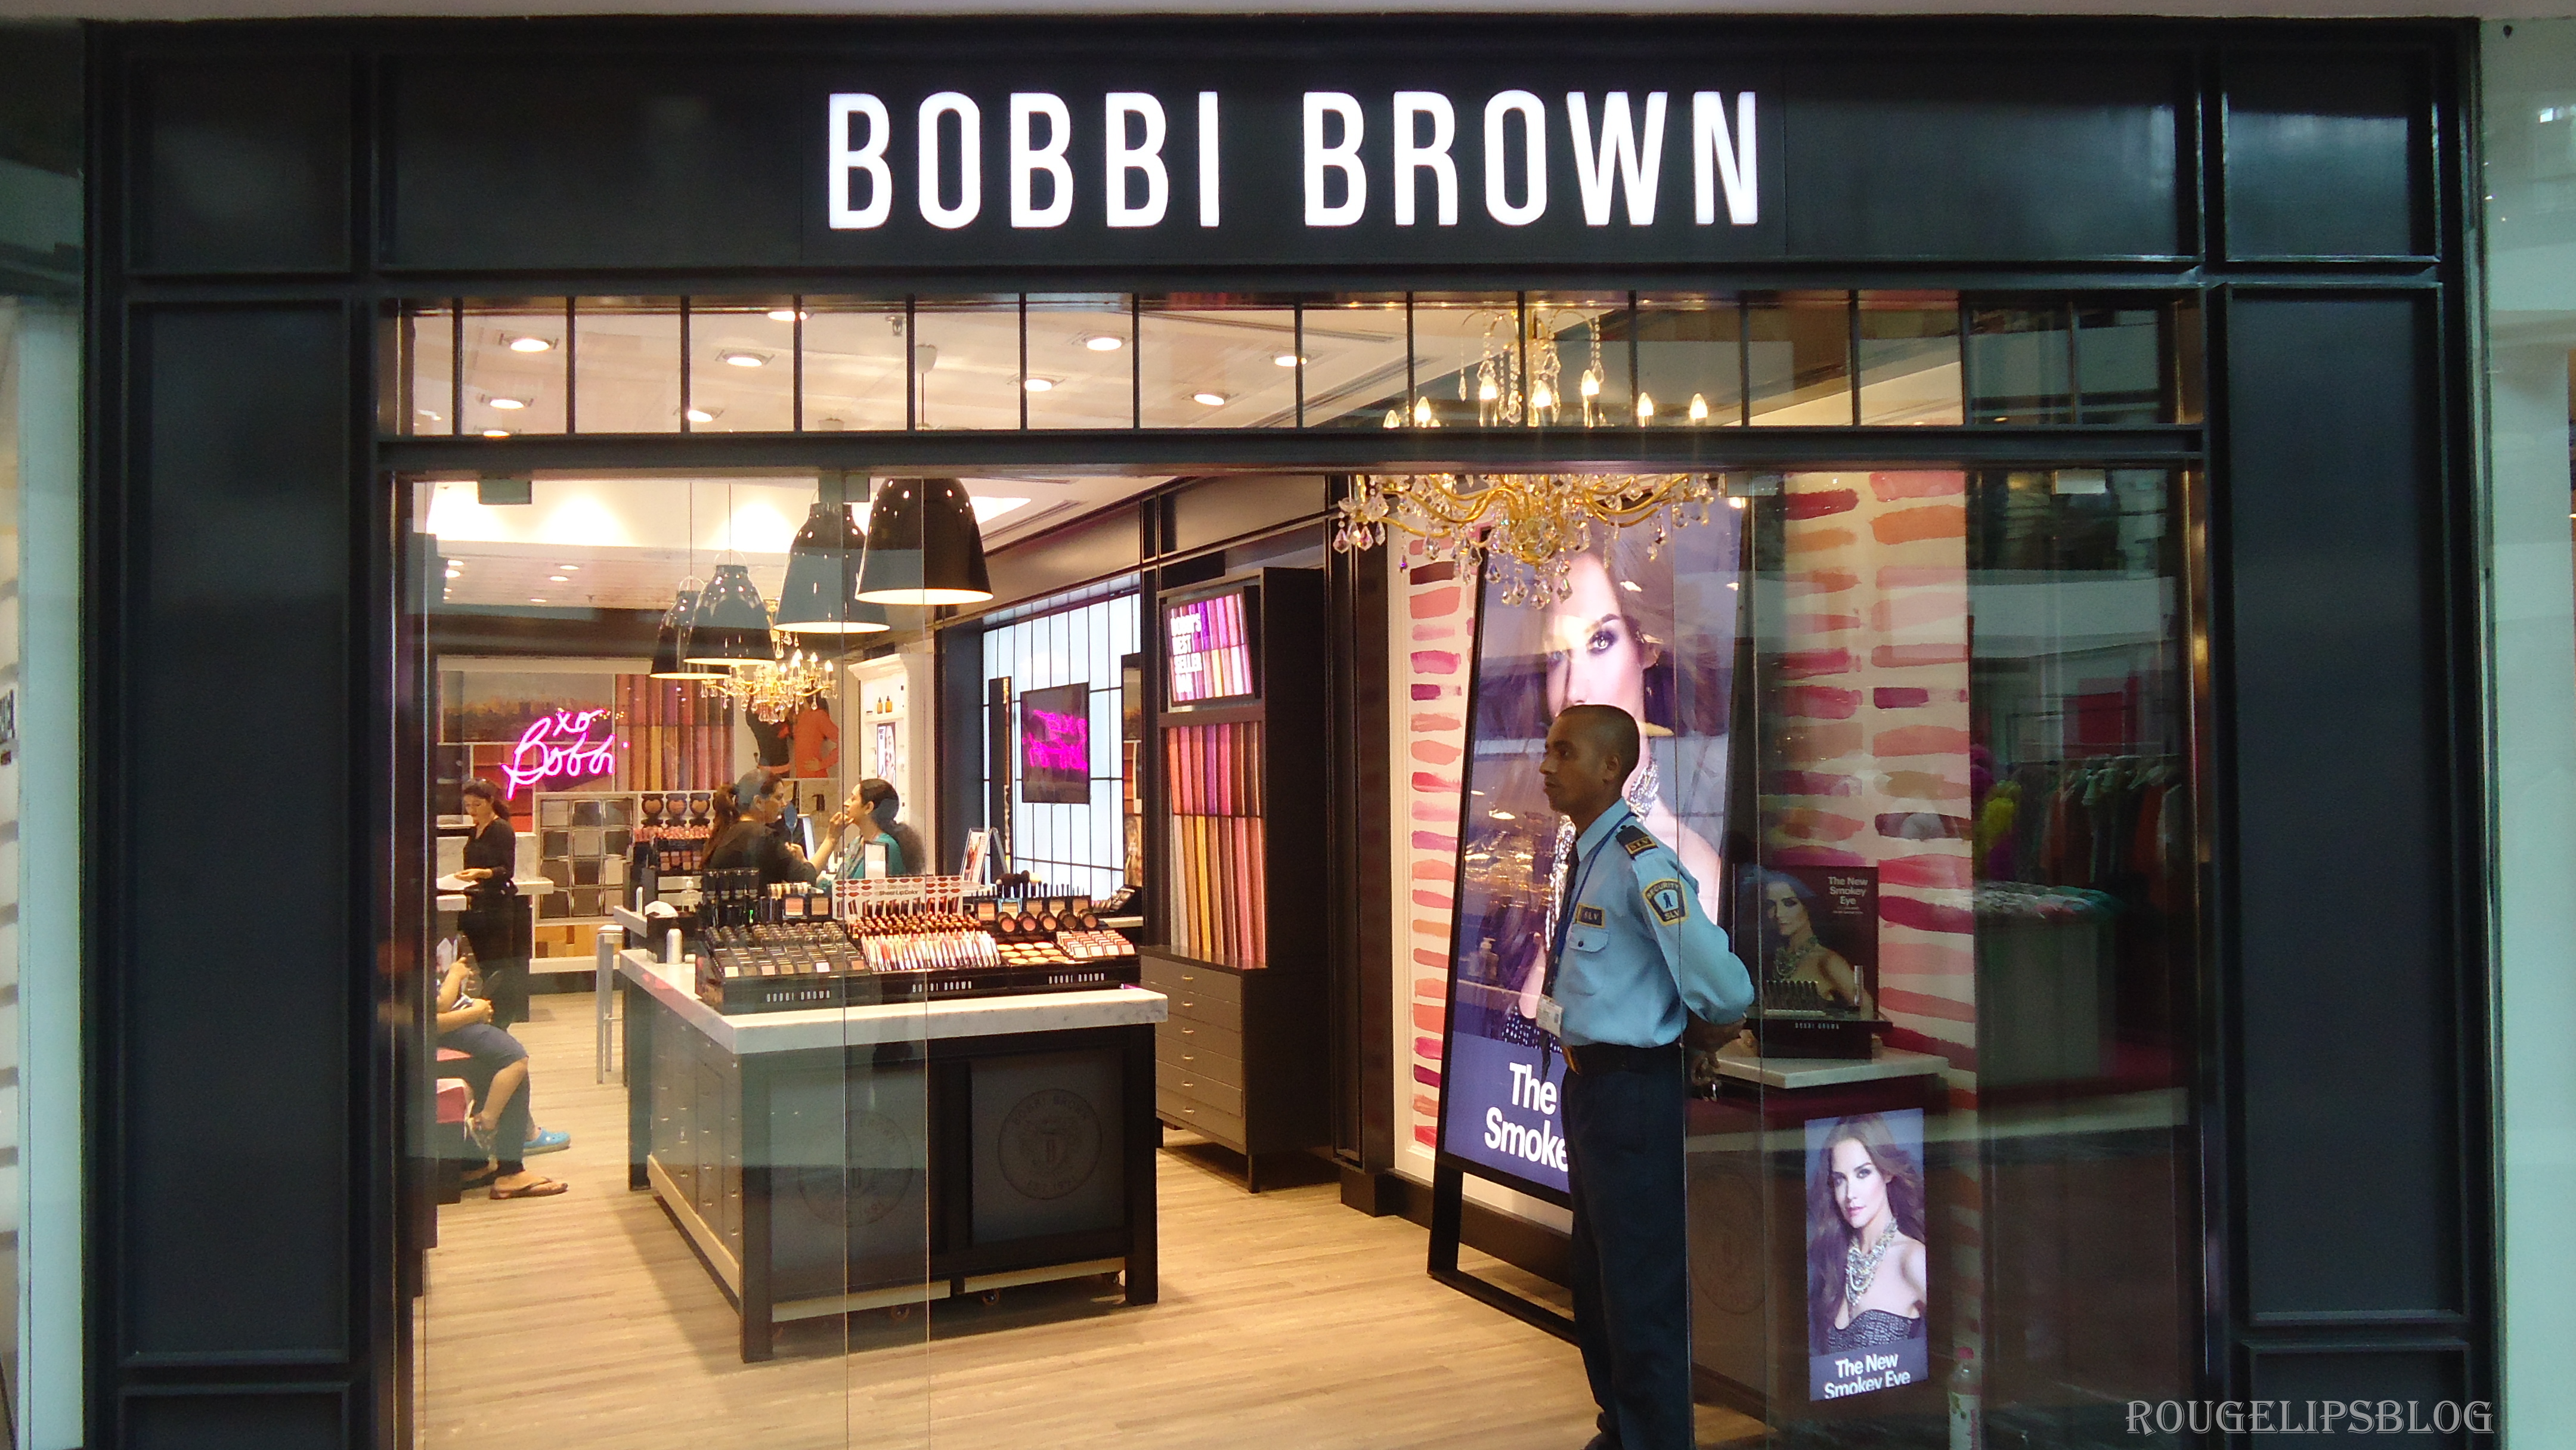 Browns магазин. Бобби Браун магазин в СПБ. Ереван магазин Бобби Браун. Бобби Браун магазин фото. Том Браун магазины.